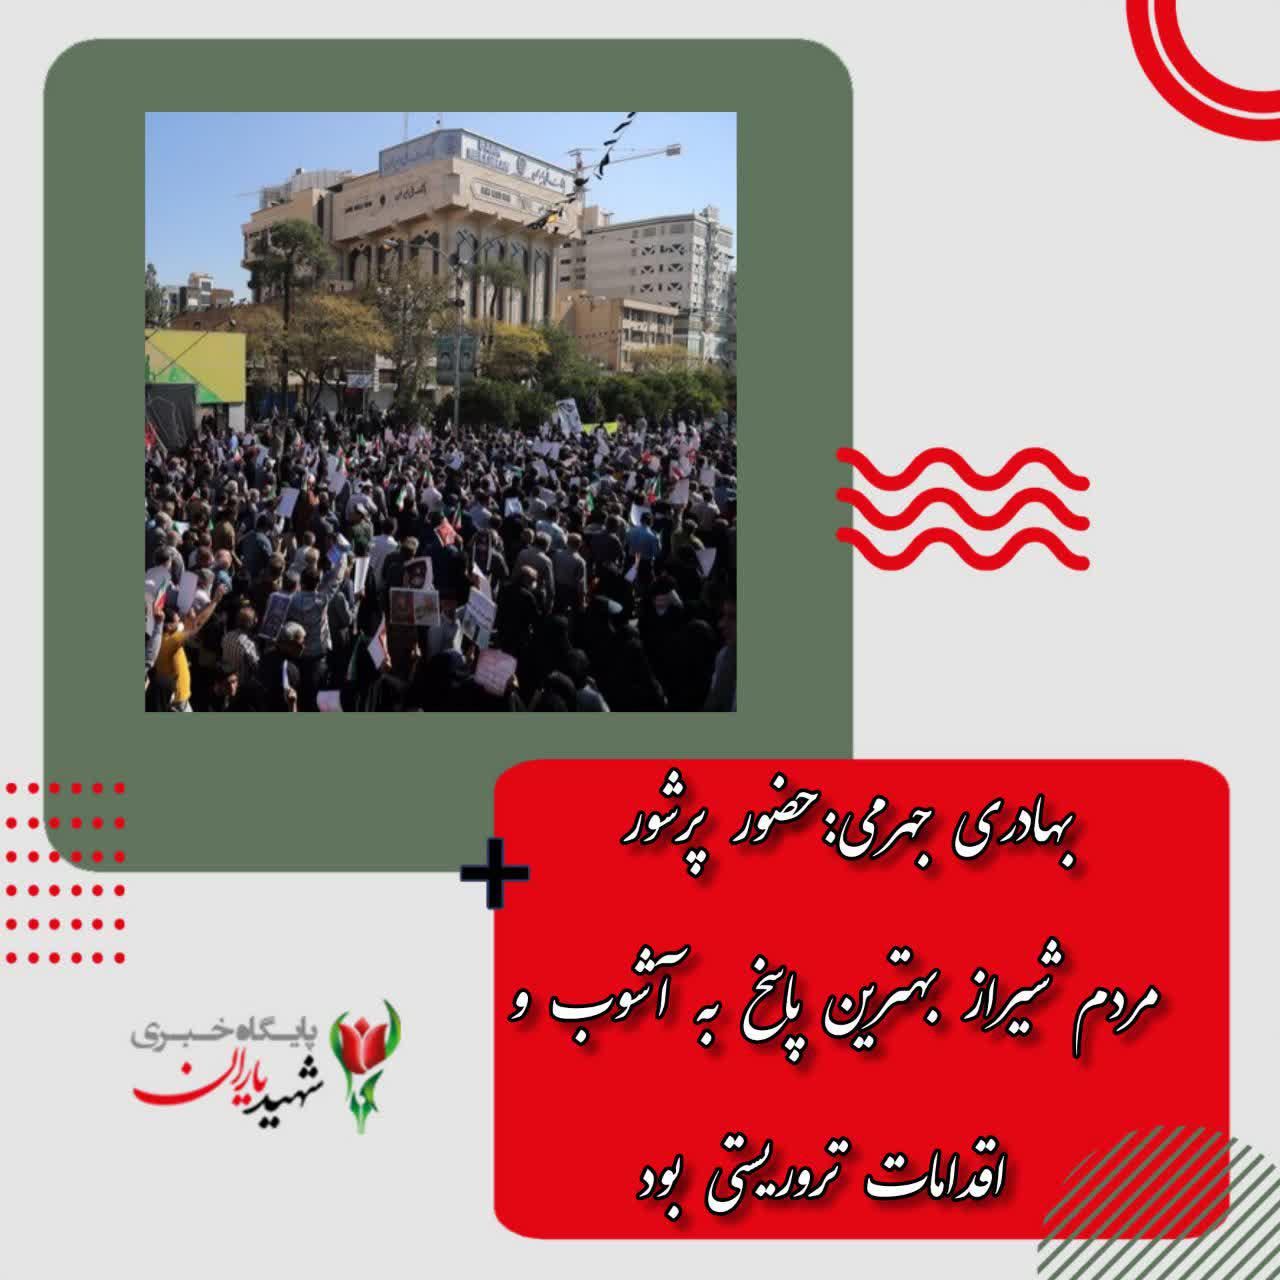 بهادری جهرمی:حضور پرشور مردم شیراز بهترین پاسخ به آشوب و اقدامات تروریستی بود